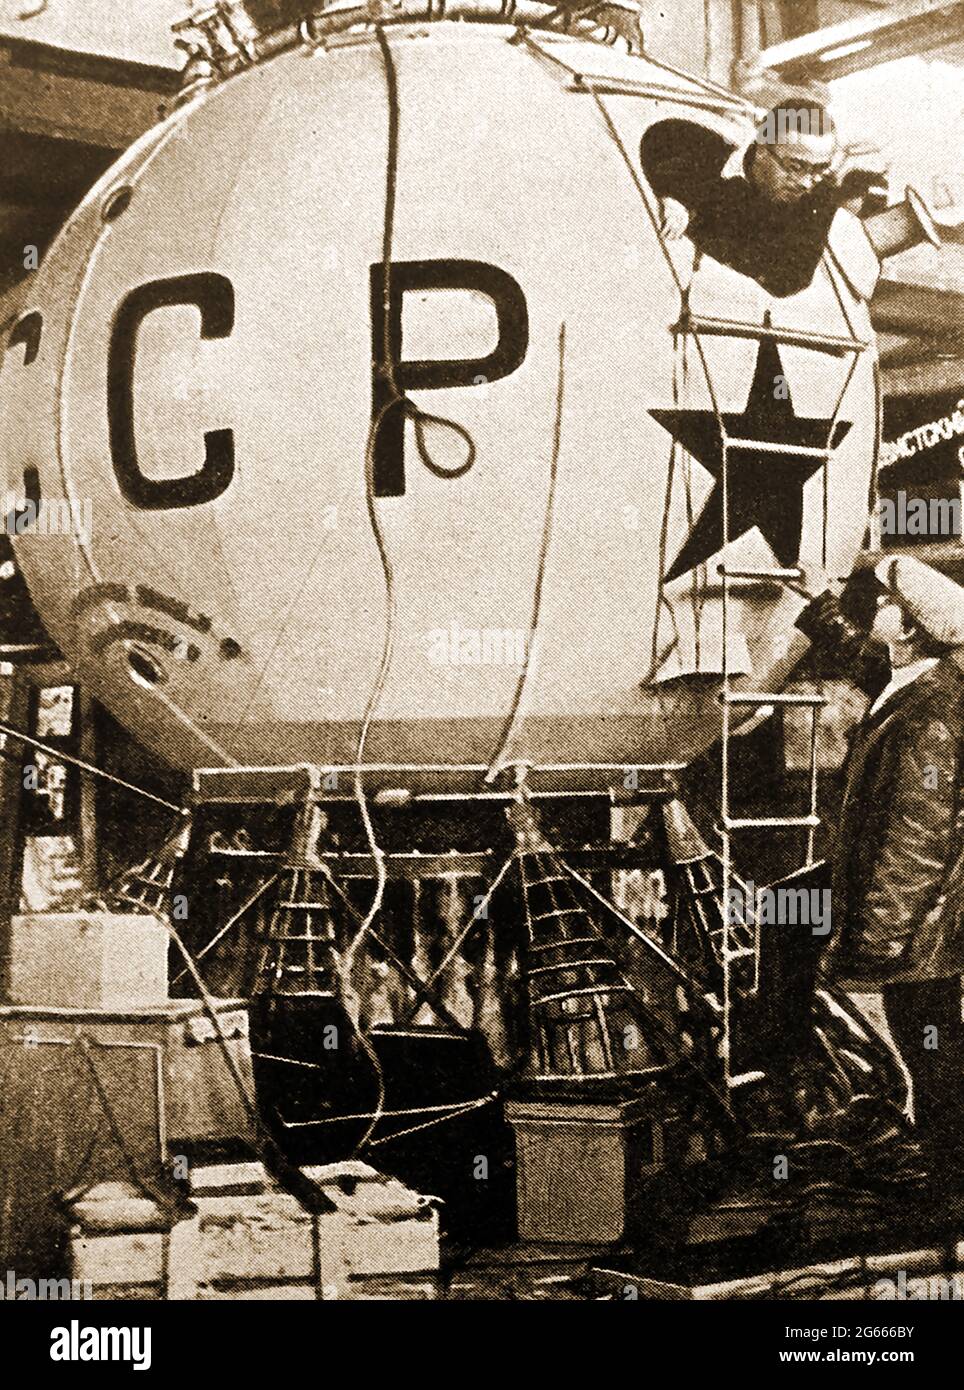 CCP 1 / URSS 1 1934 . Una vecchia foto della stampa del pallone russo da record stratosfera (abitacolo) che è salito a 11.5 miglia, stabilendo un record per una mongolfiera piena di idrogeno. Il suo comandante fu Georgy Prokofiev (1902-1939). L'equipaggio era composto da Prokofiev, Konstantin Godunov e dal co-pilota Ernst Birnbaum. L'aria Sovietica forza palloncino ad alta quota con un equipaggio di tre eseguito studi scientifici sulla stratosfera della Terra. Un altro, Osoaviakhim-1, più tardi si schiantò sulla discesa, uccidendo tre persone. Foto Stock